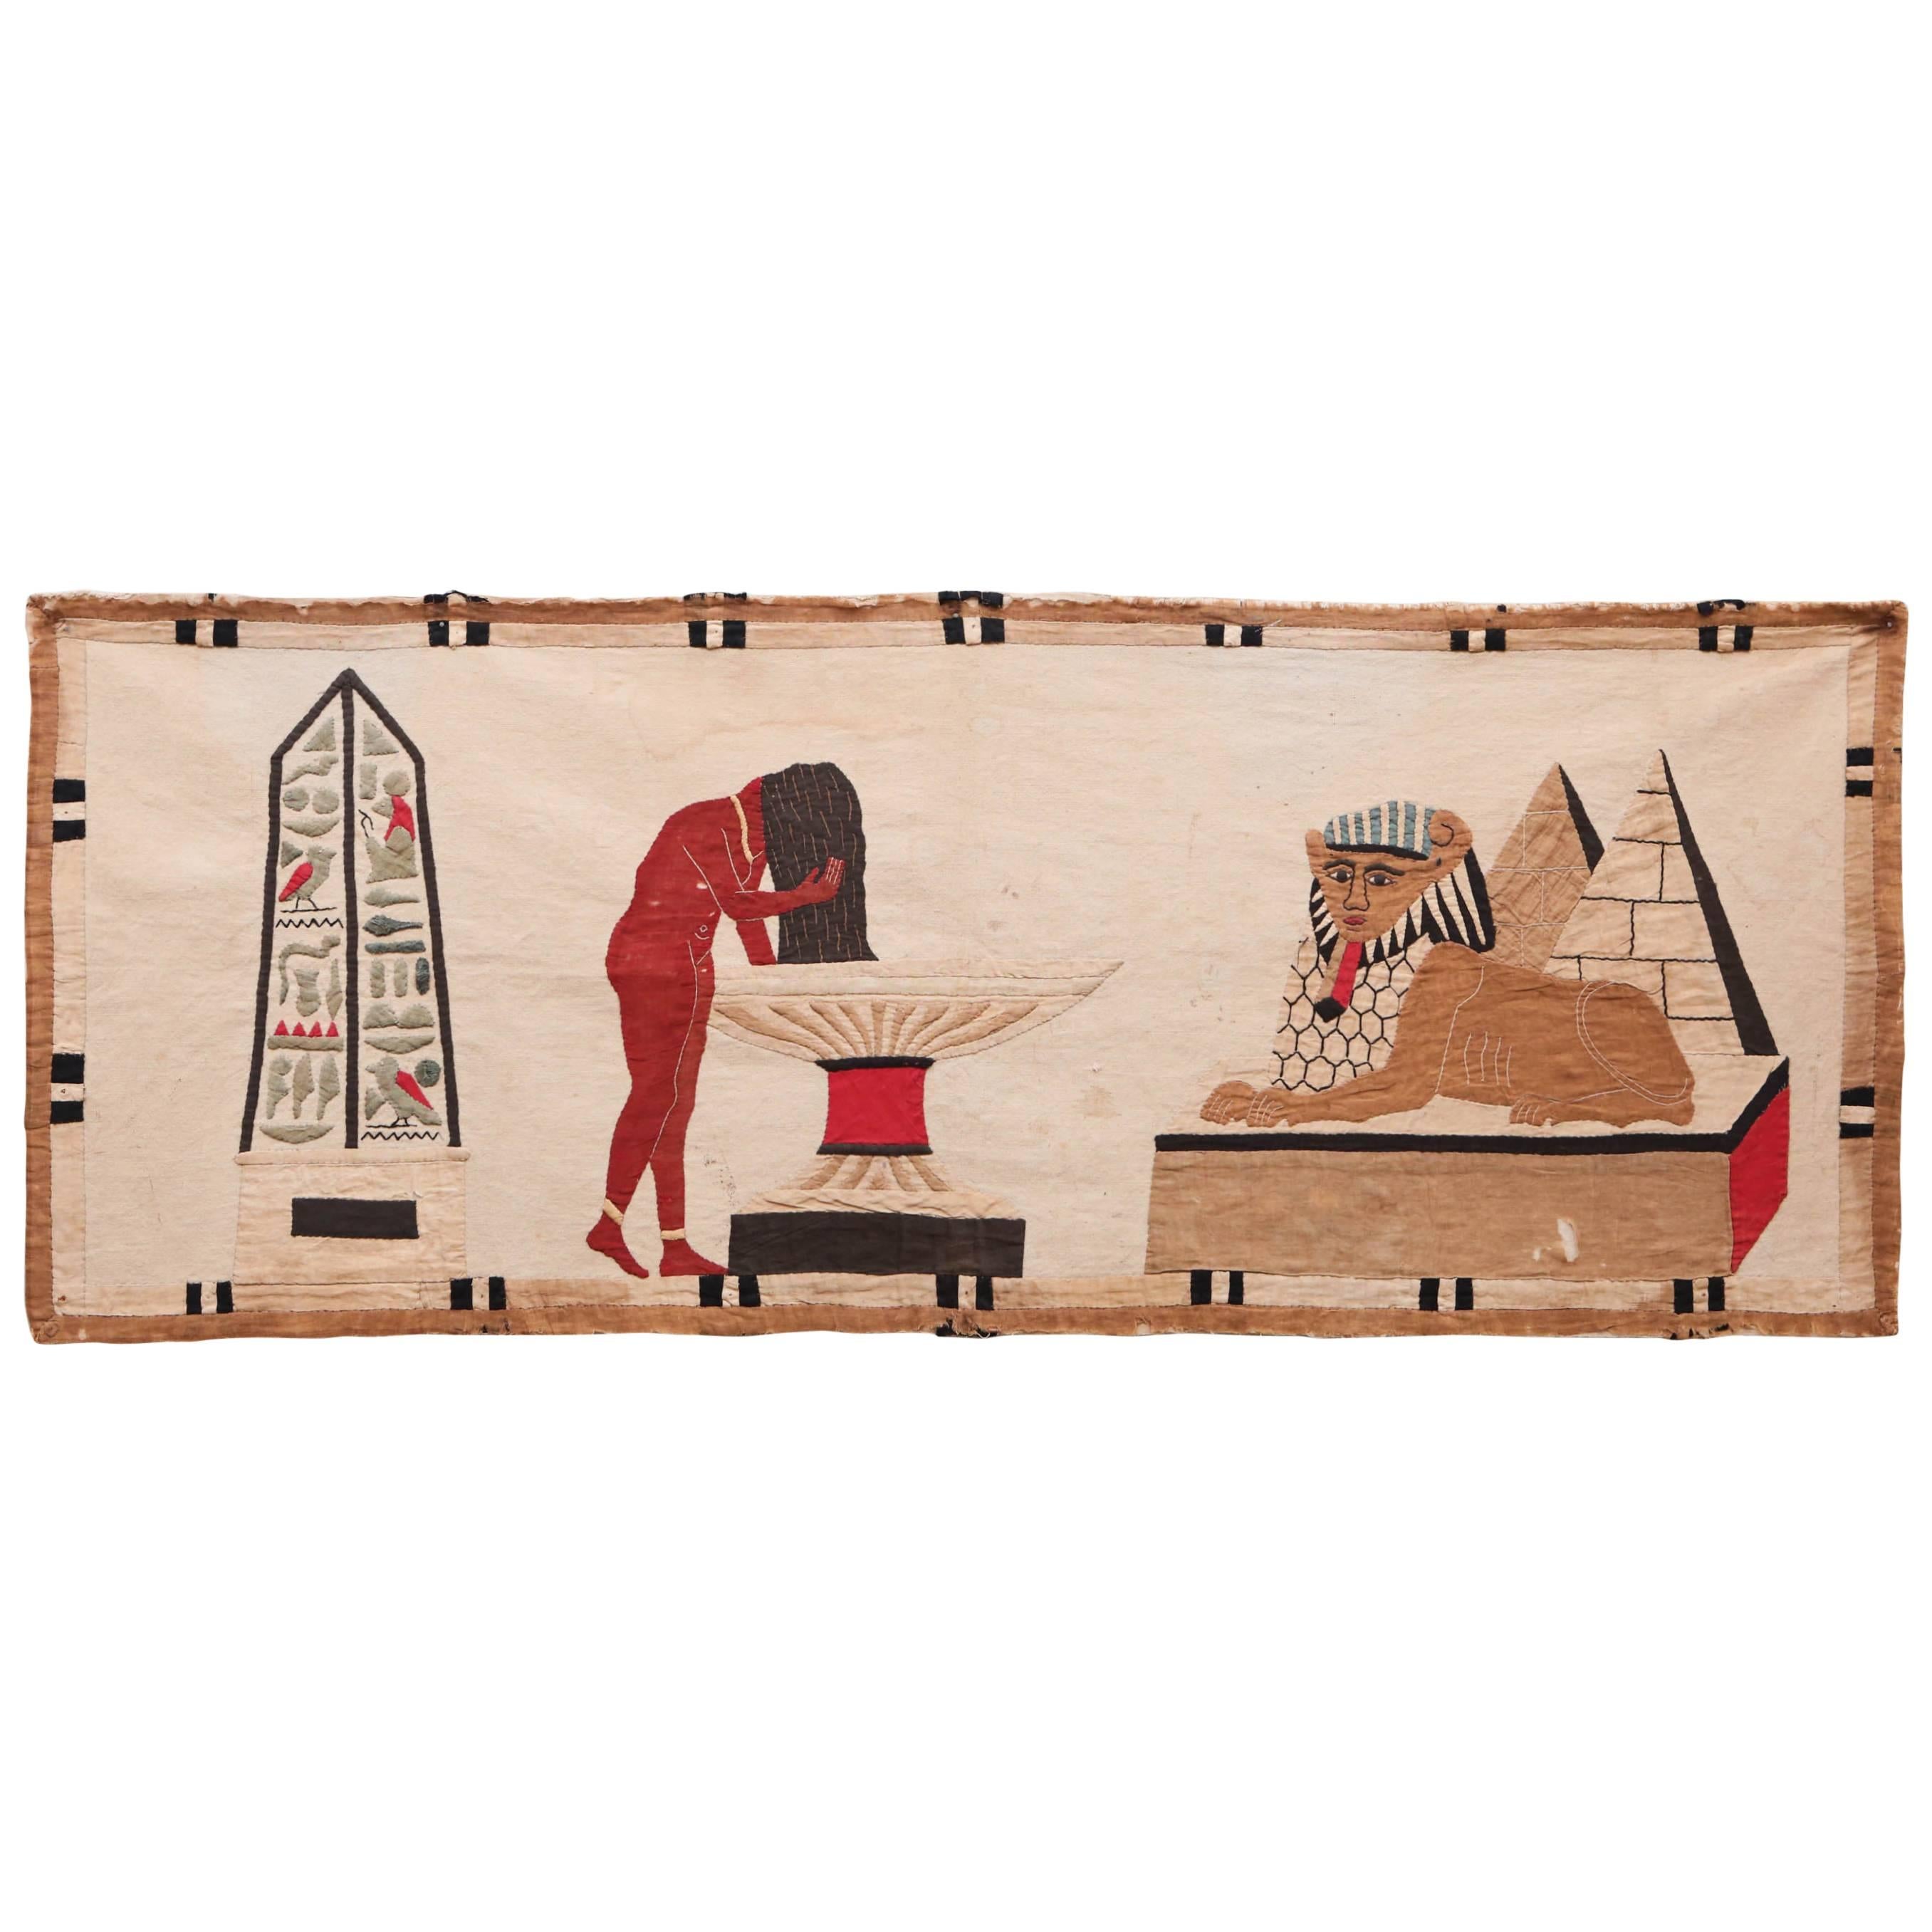 Egyptian Revival Applique Textile Panel For Sale